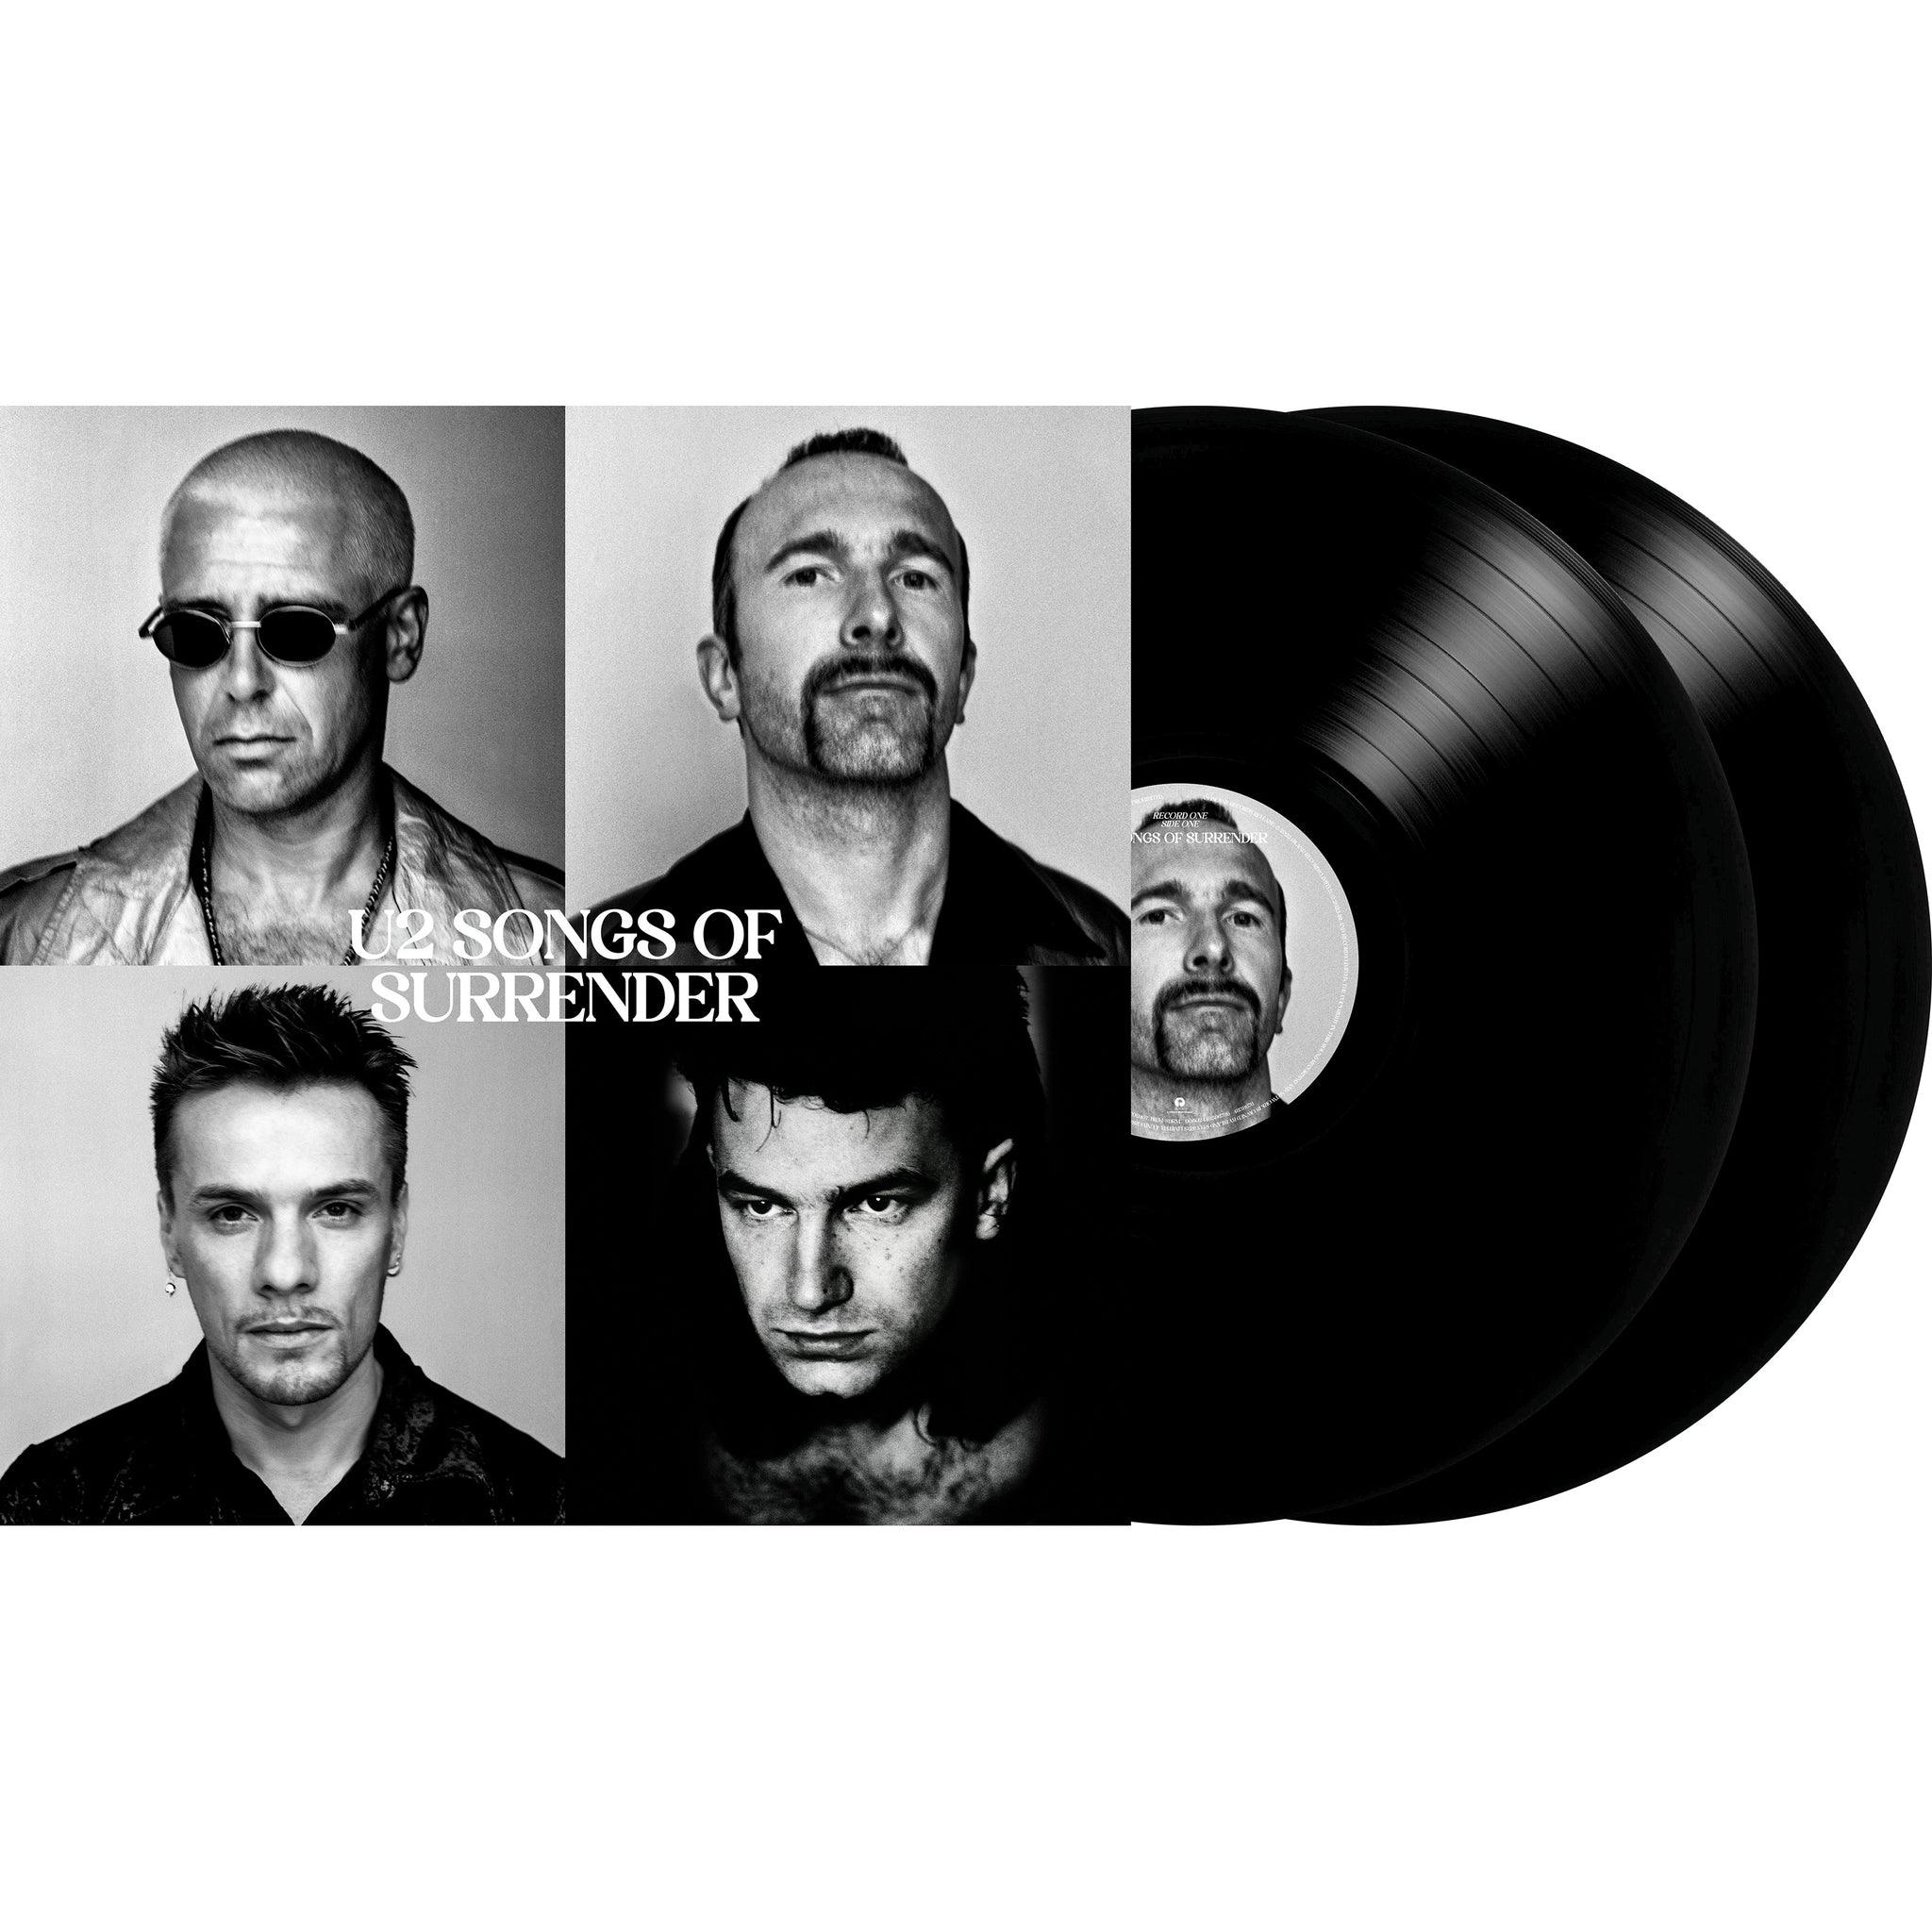 U2 - Songs of Surrender - 2LP - 180g Black Vinyl